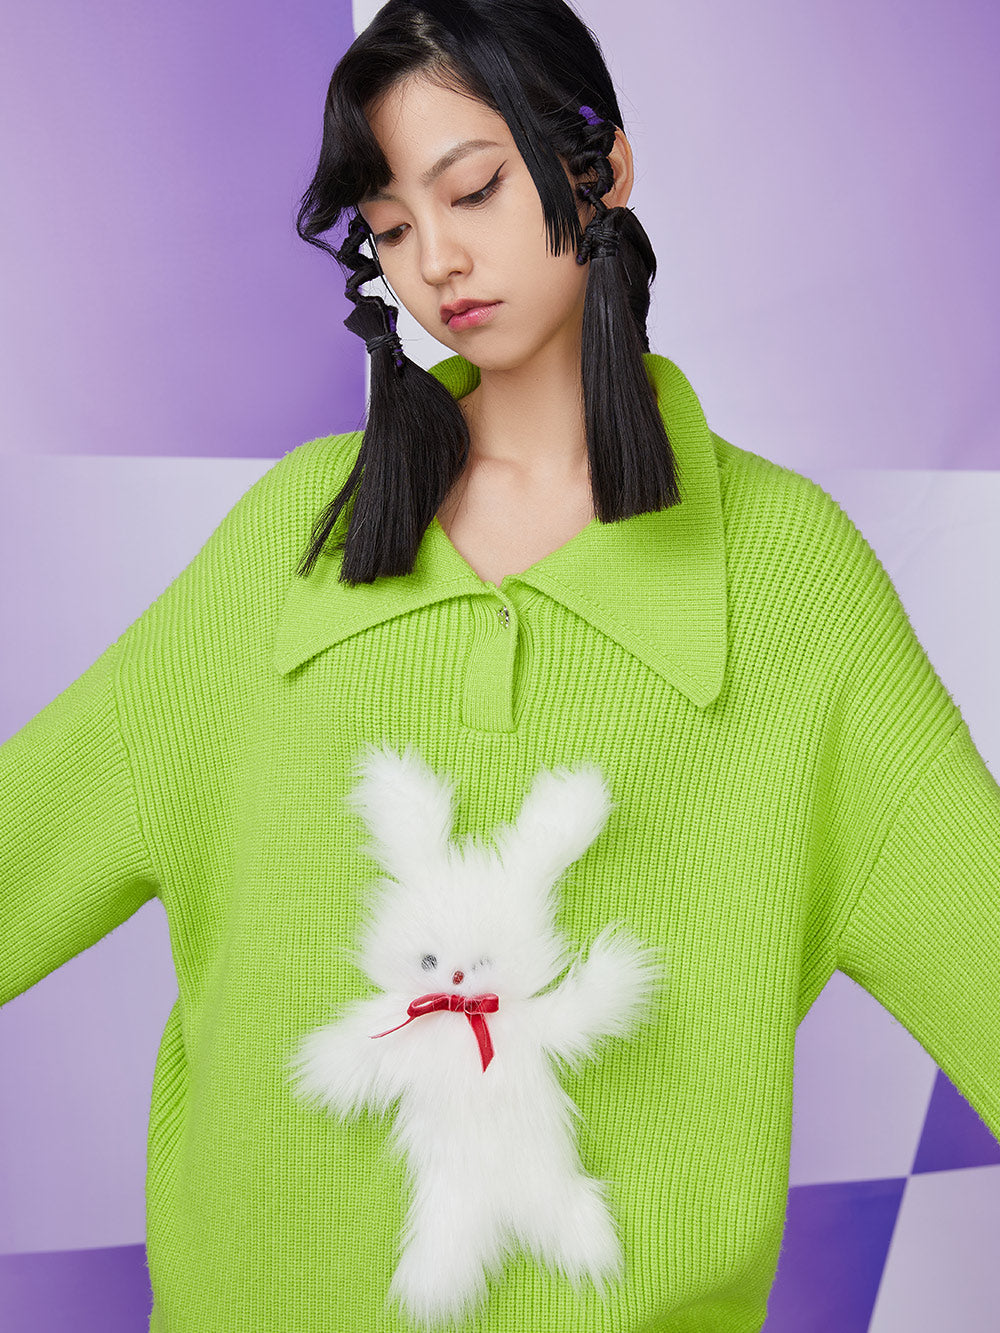 MUKZIN Rib-Knit Retro Loose Polo Neck Pullover Green Sweater